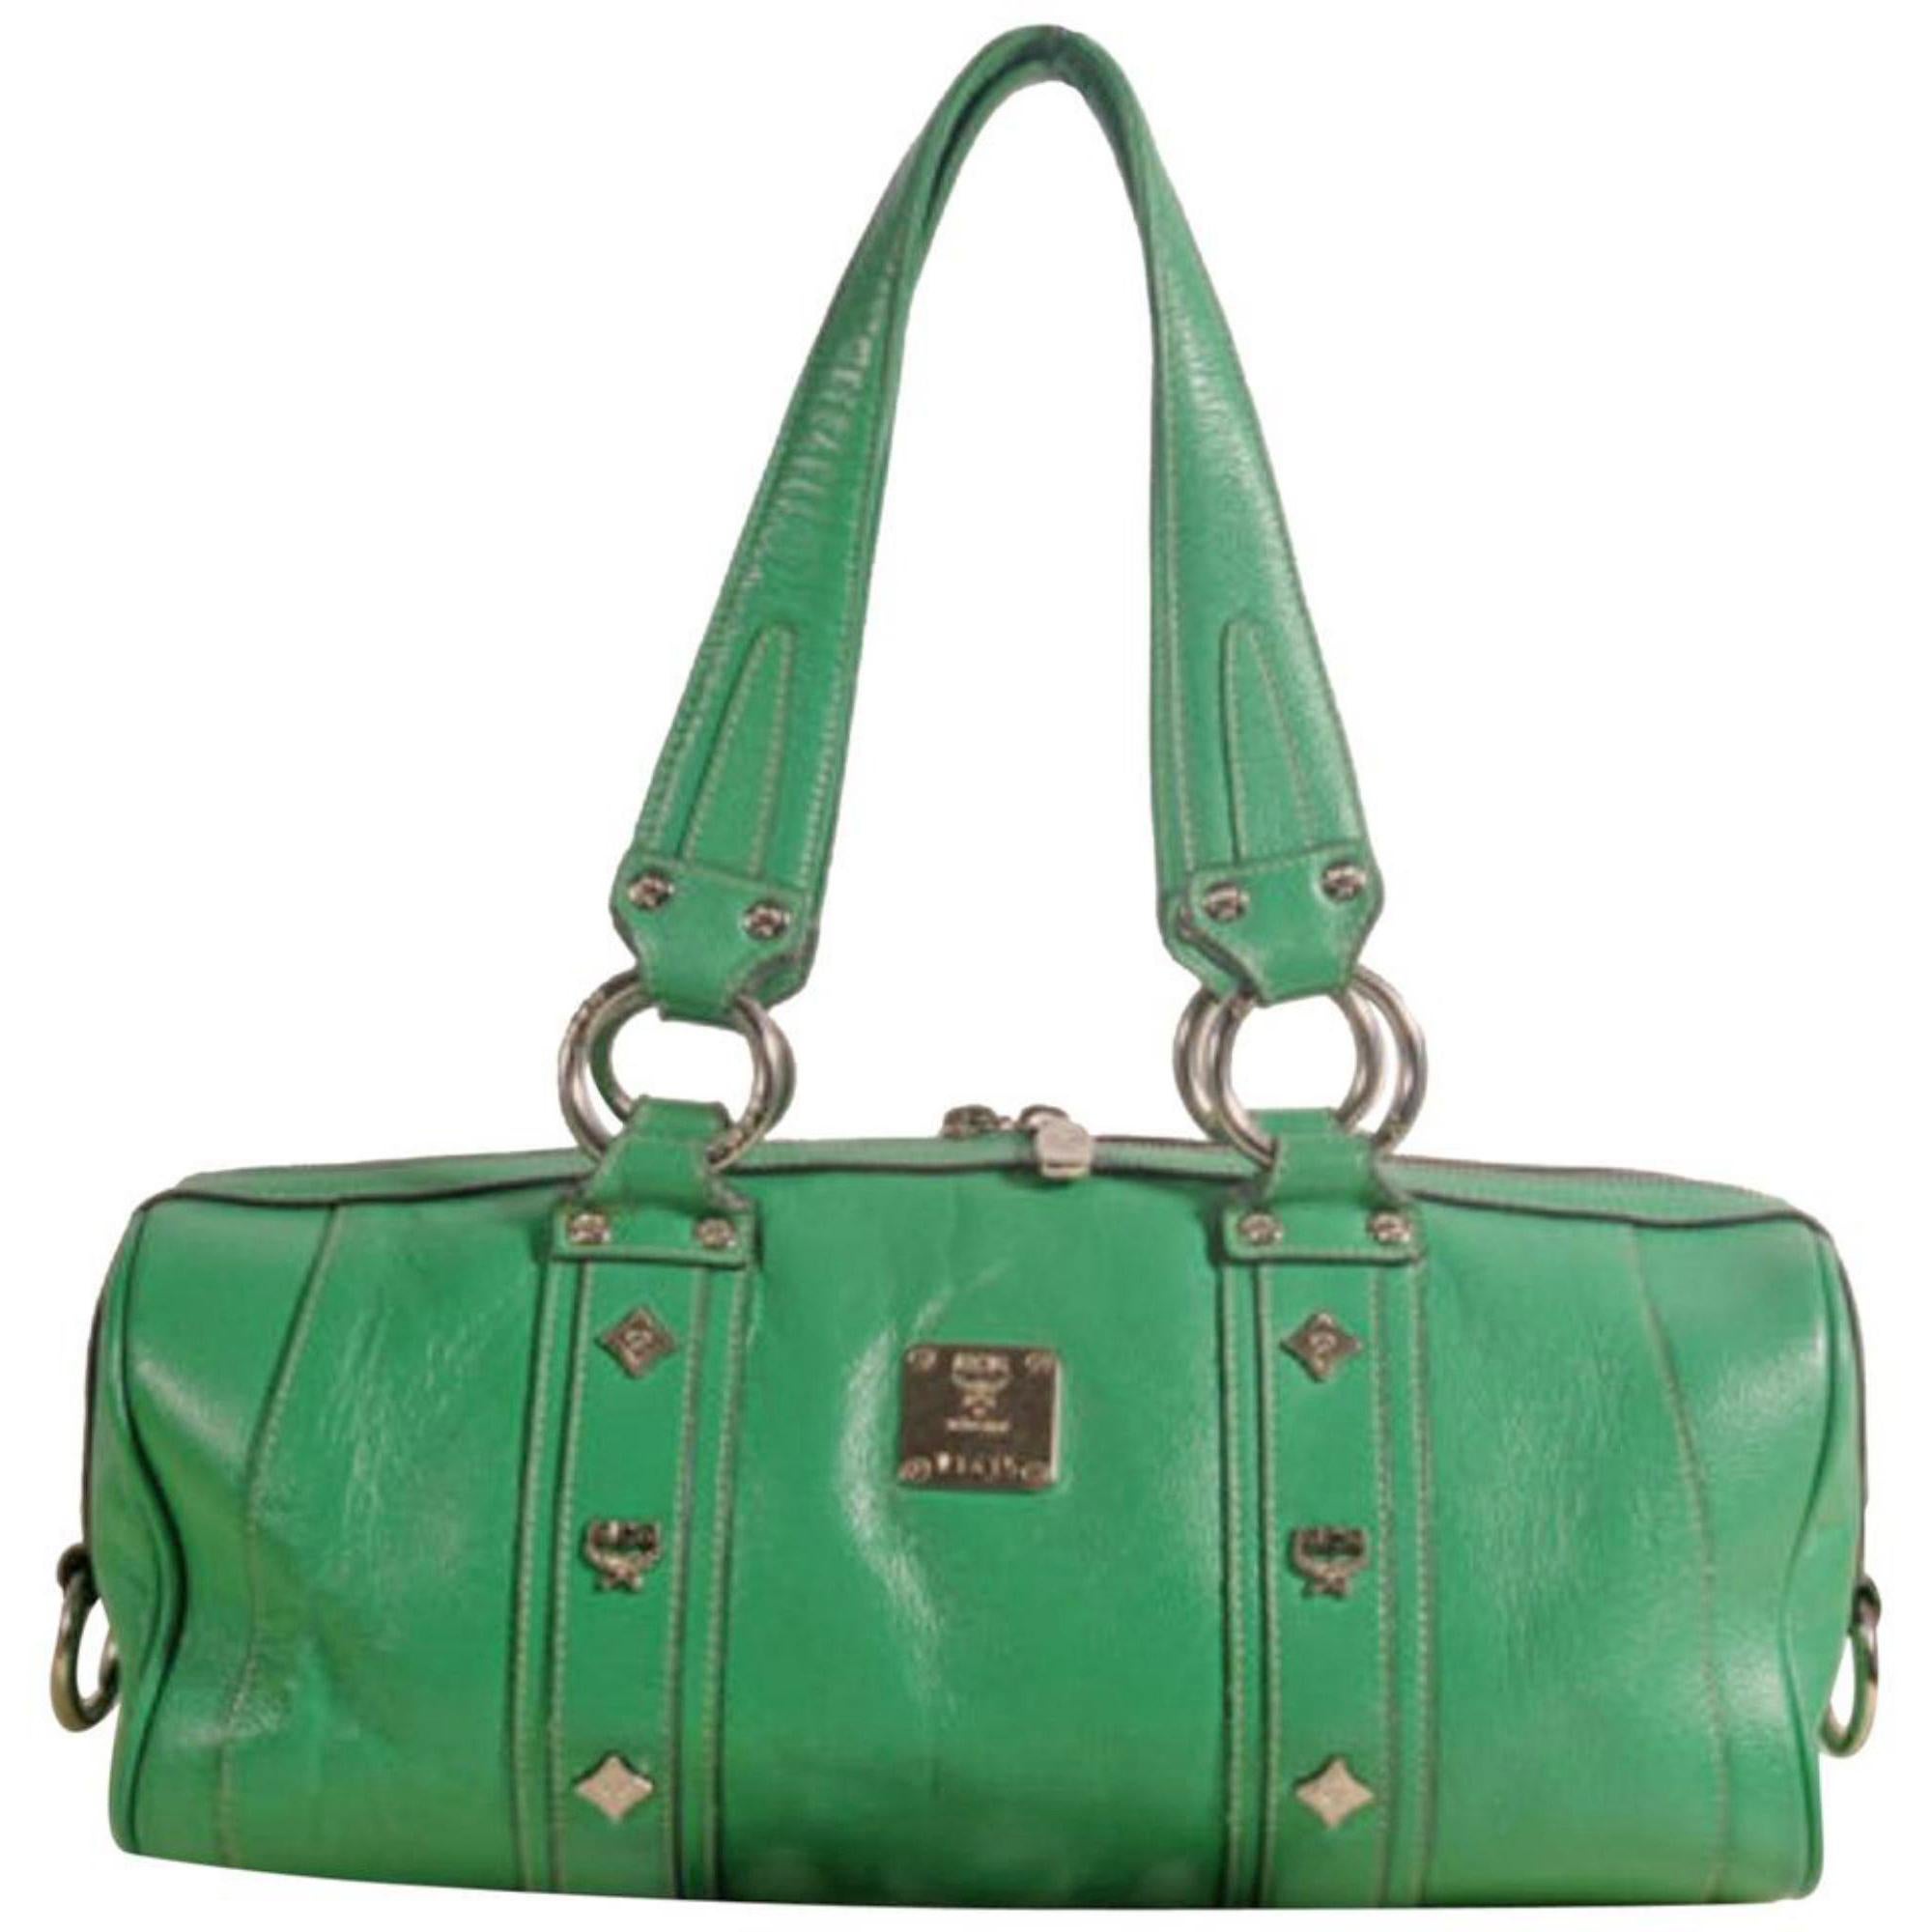 Mcm Bag Green - For Sale on 1stDibs